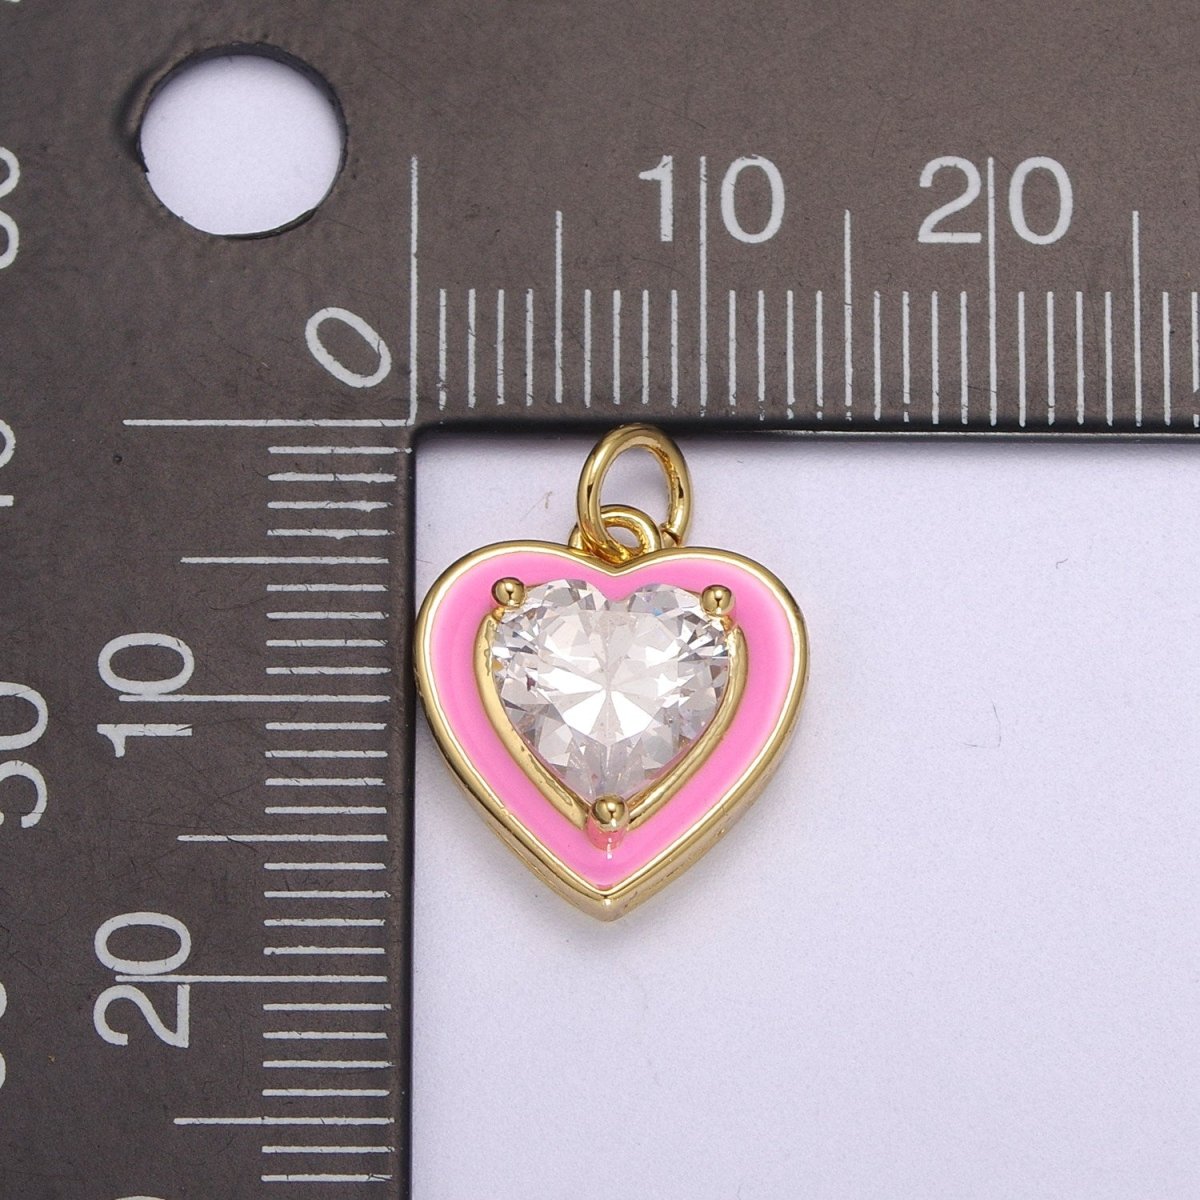 Big Clear CZ Micro Pave on Enamel Colorful Heart Shape Pendant 14K Gold Filled Enamel Charm, Necklace Bracelet Component M-670 - M-673 - DLUXCA